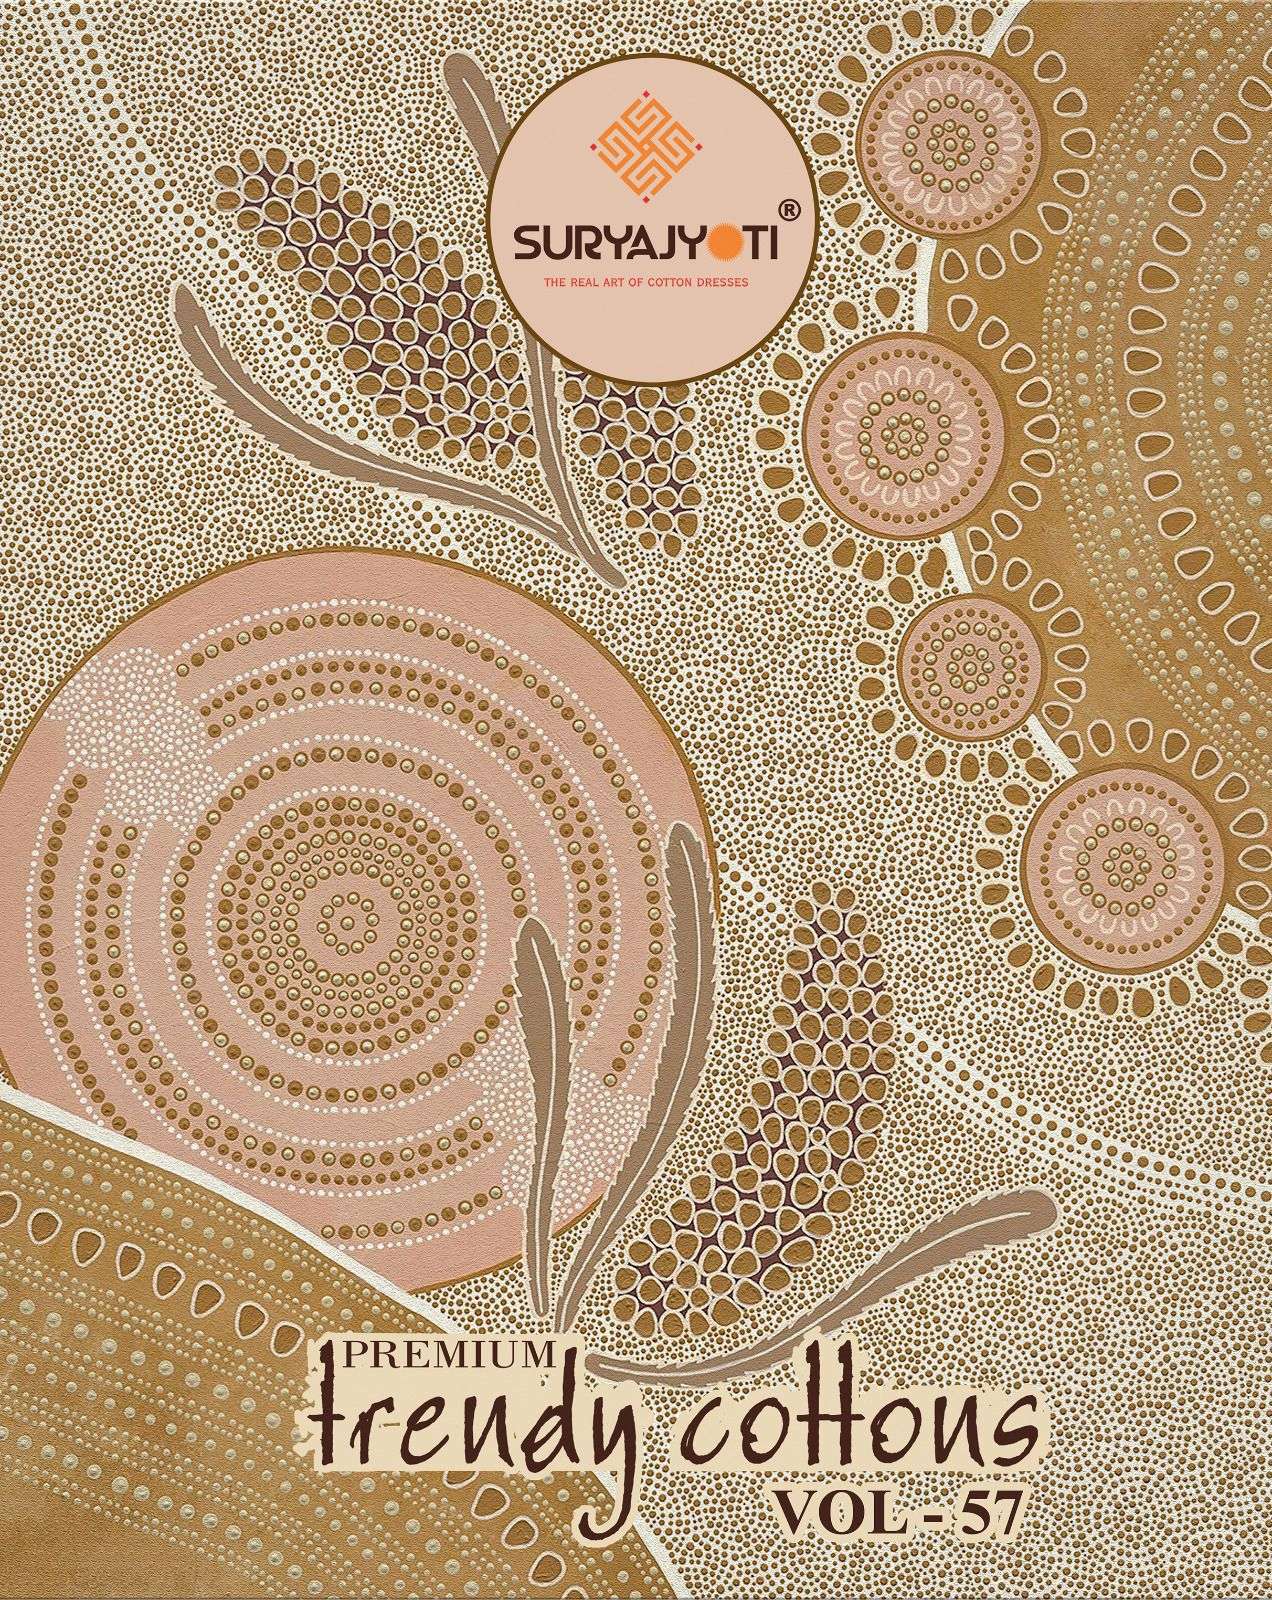 trendy cottons vol 57 by suryajyoti cotton ladies suits wholesaler 